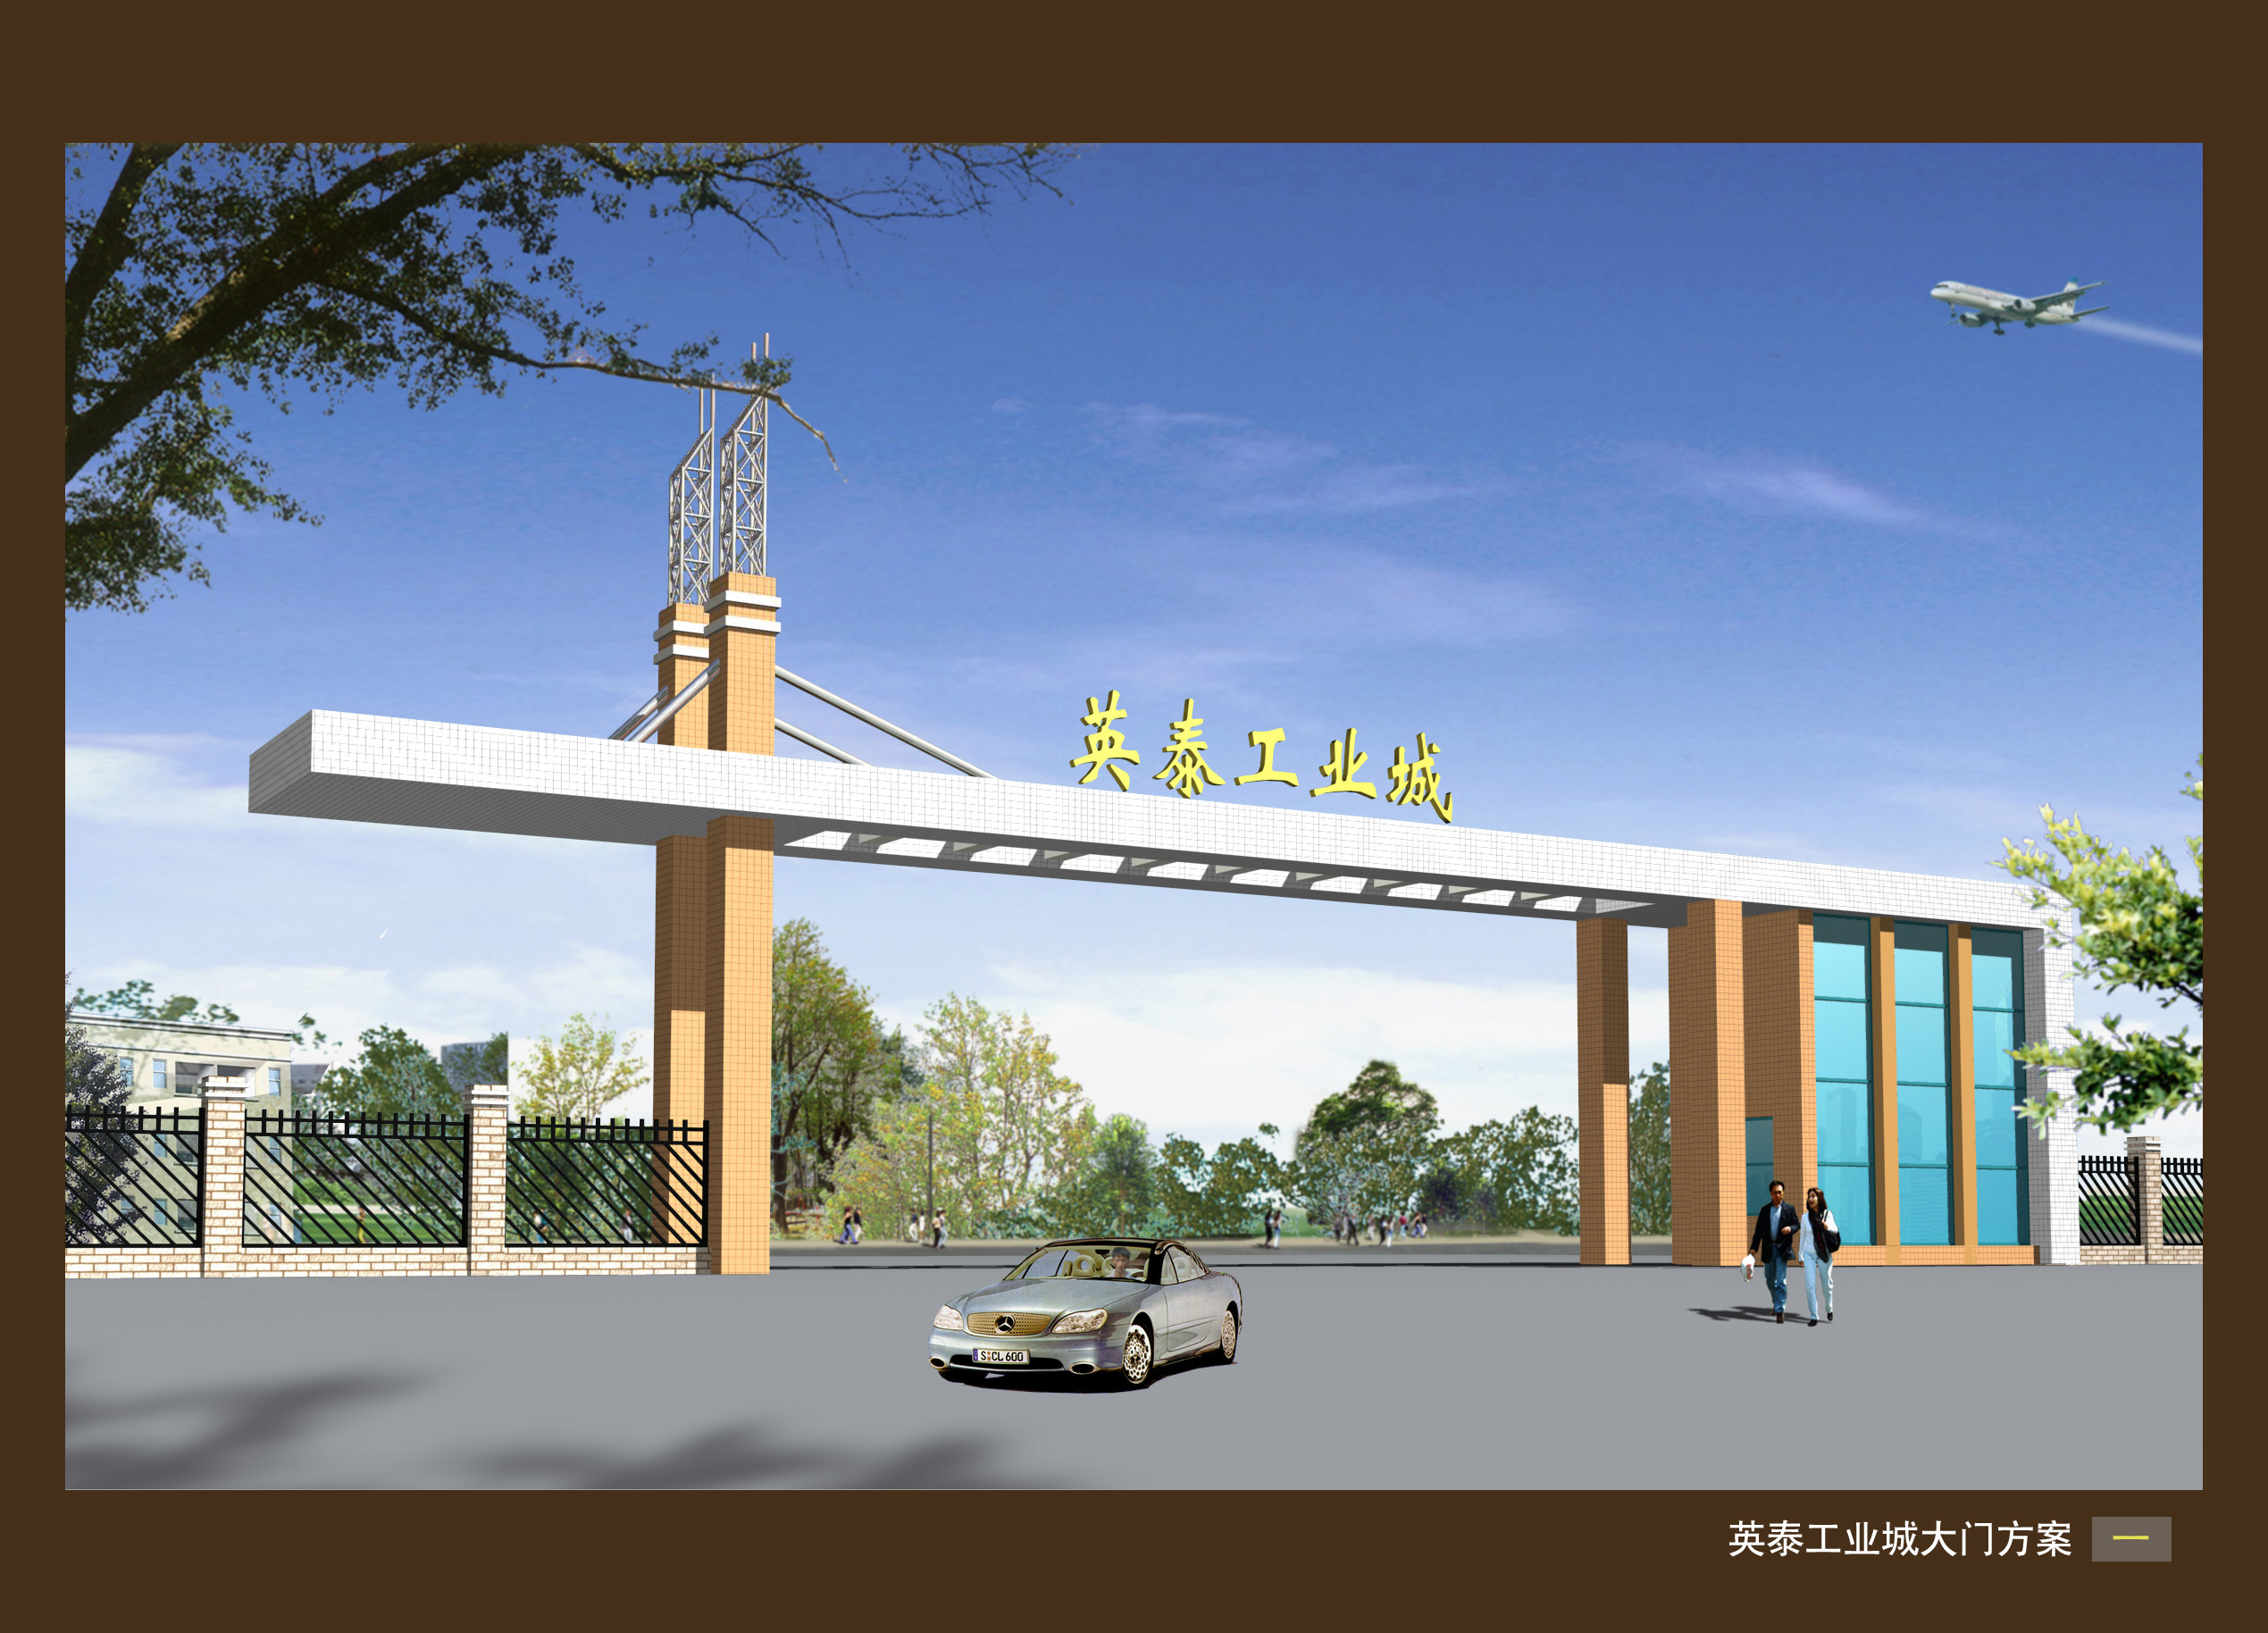 燃气公司形象墙-上海菁视文化传播有限公司案例展示-一品威客网